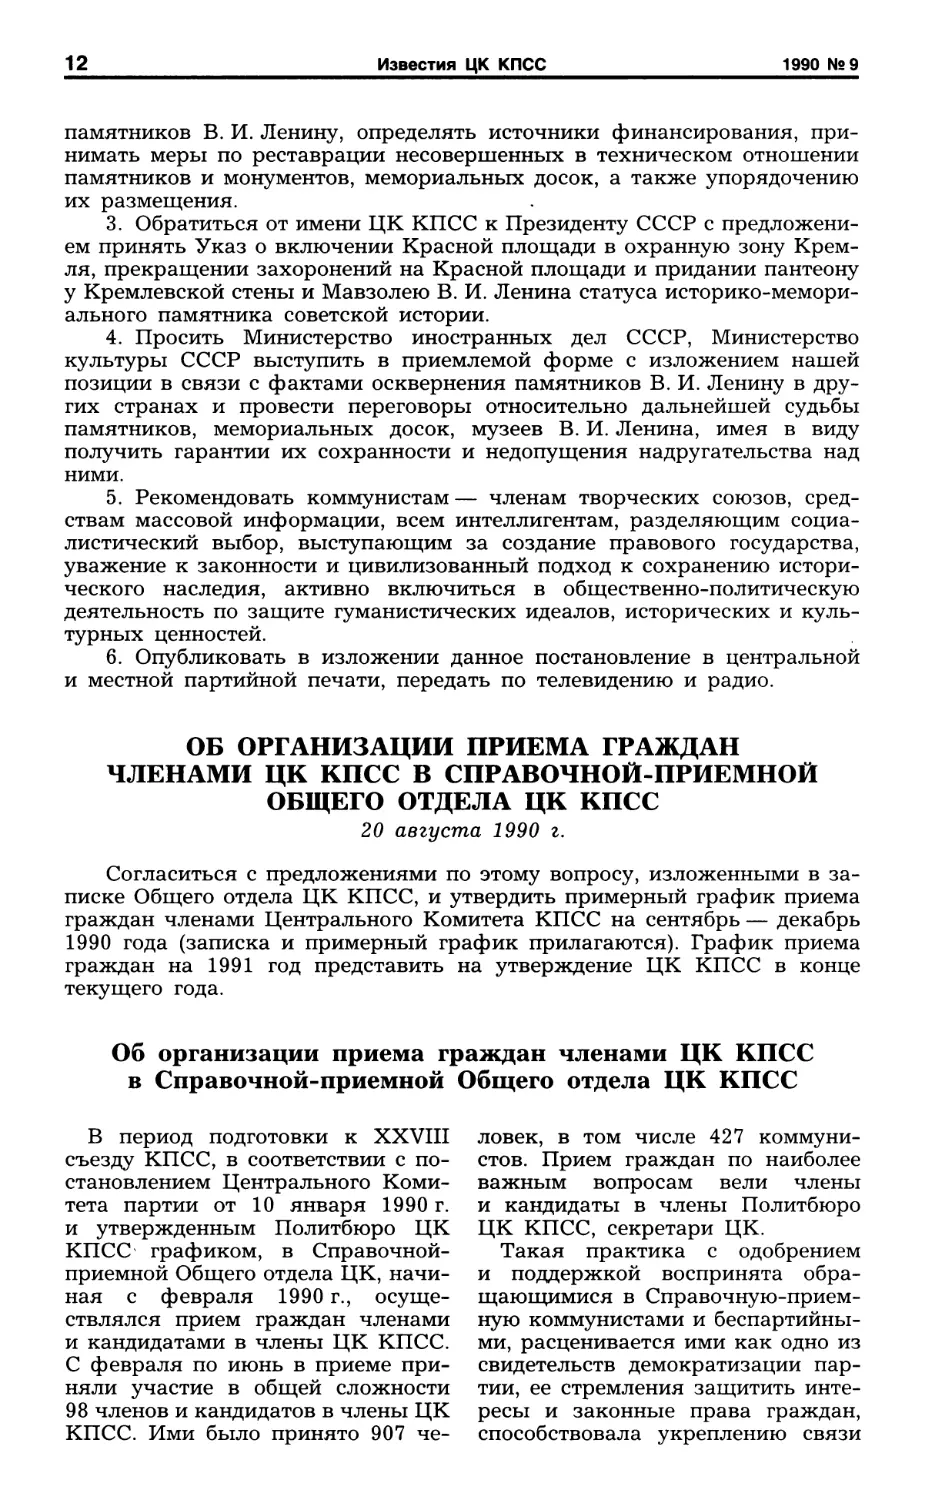 Об организации приема граждан членами ЦК КПСС в Справочной-приемной Общего отдела ЦК КПСС. 20 августа 1990 г